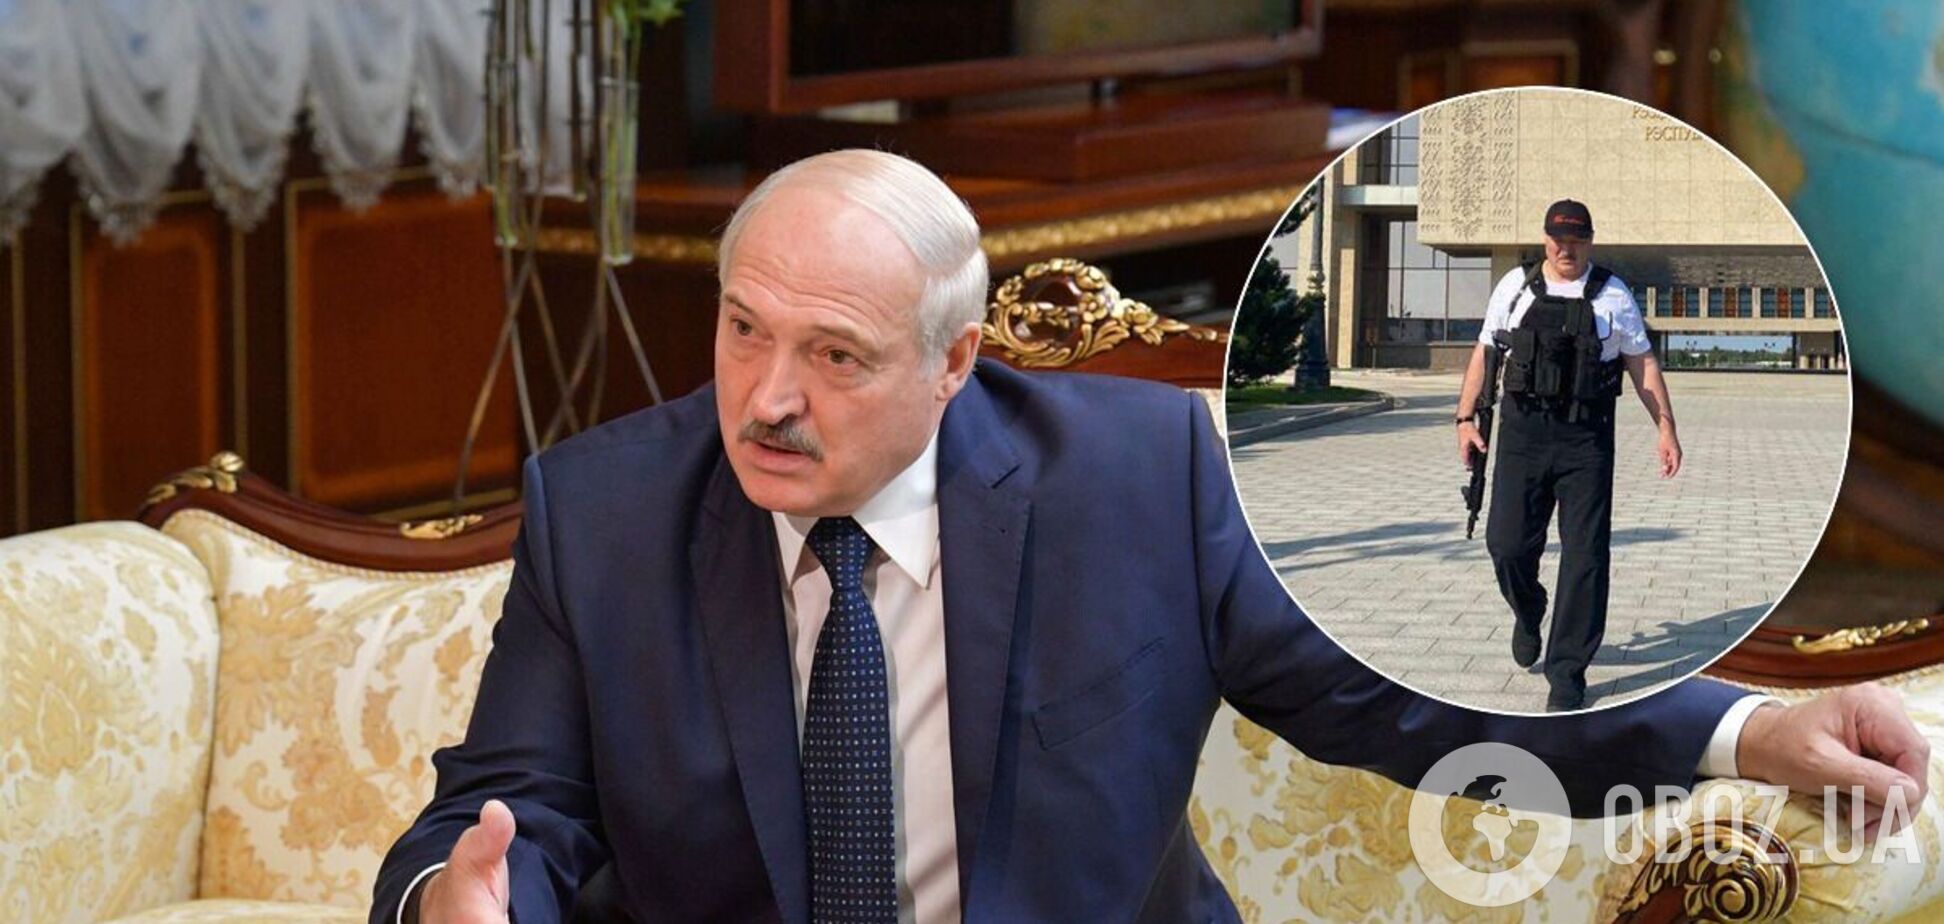 Лукашенко объяснился за фото с автоматом и дал оценку оппозиции